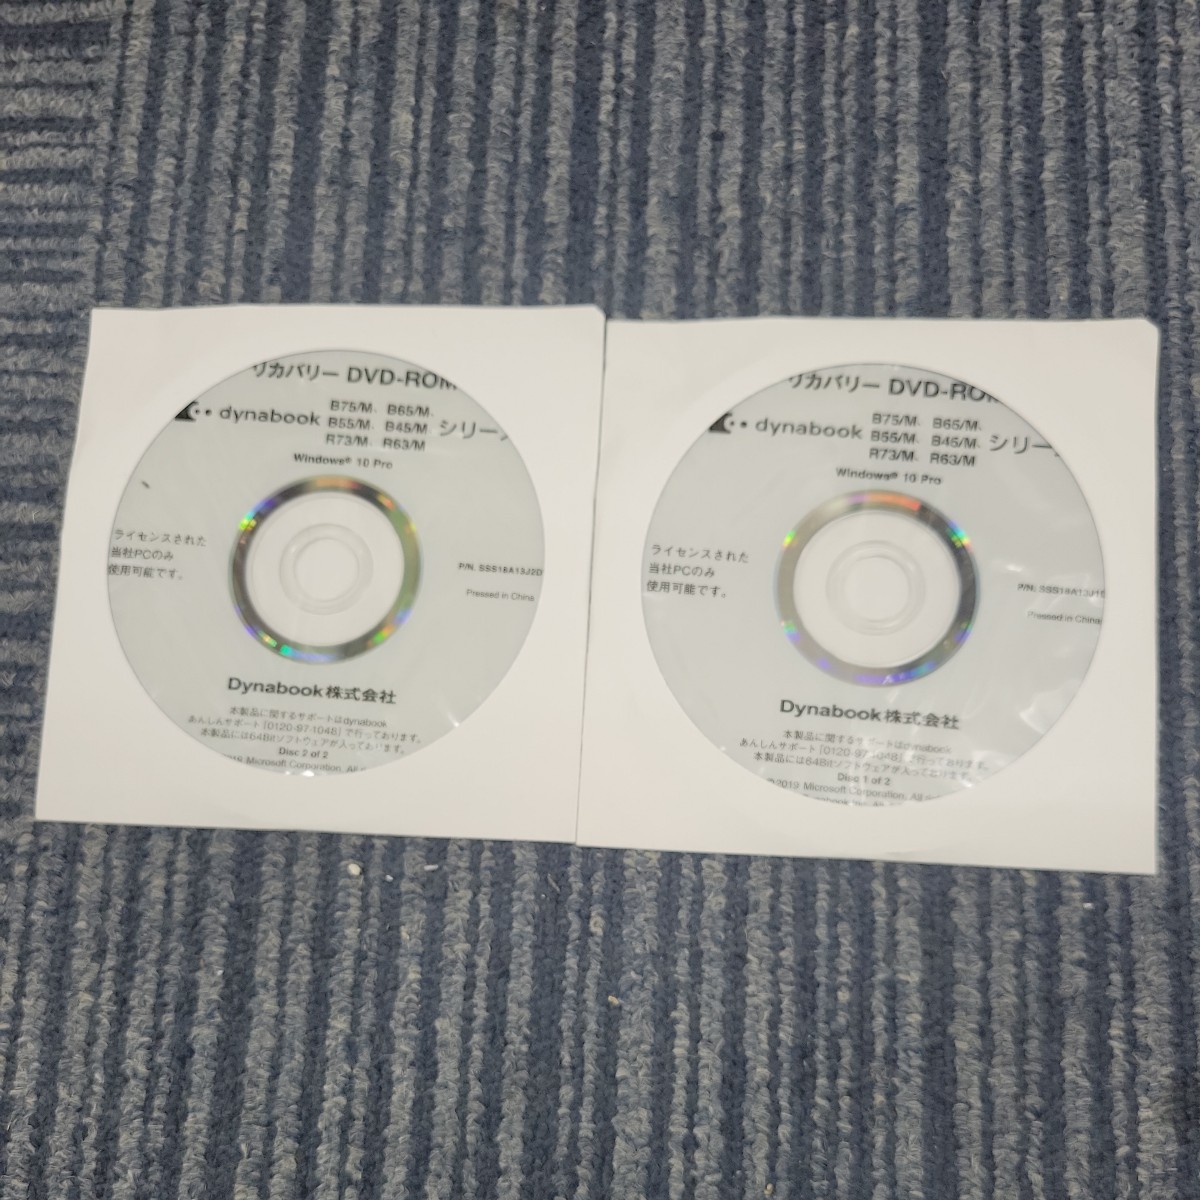 【2枚セット】東芝 TOSHIBA dynabook B75/M B65/M B55/M B45/M R73/M R63/M Win10pro リカバリーディスク DVD-ROM SSS18A13J P02362_画像1